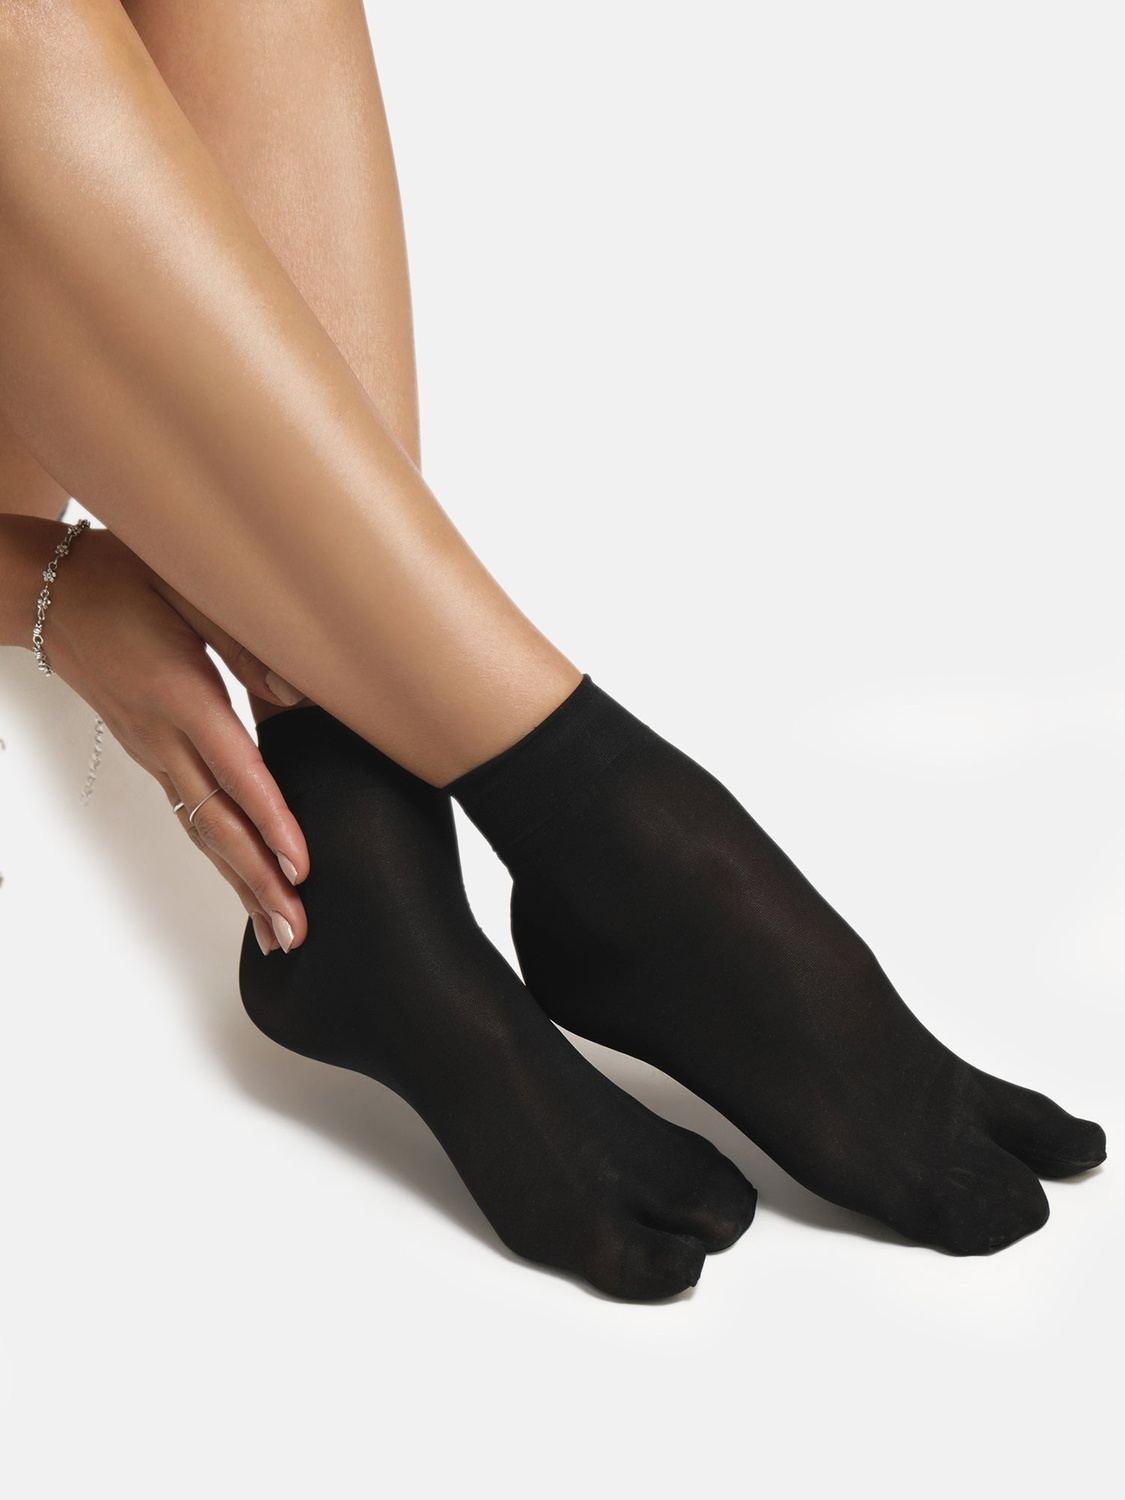 Sheer Ankle Thumb Socks - Black